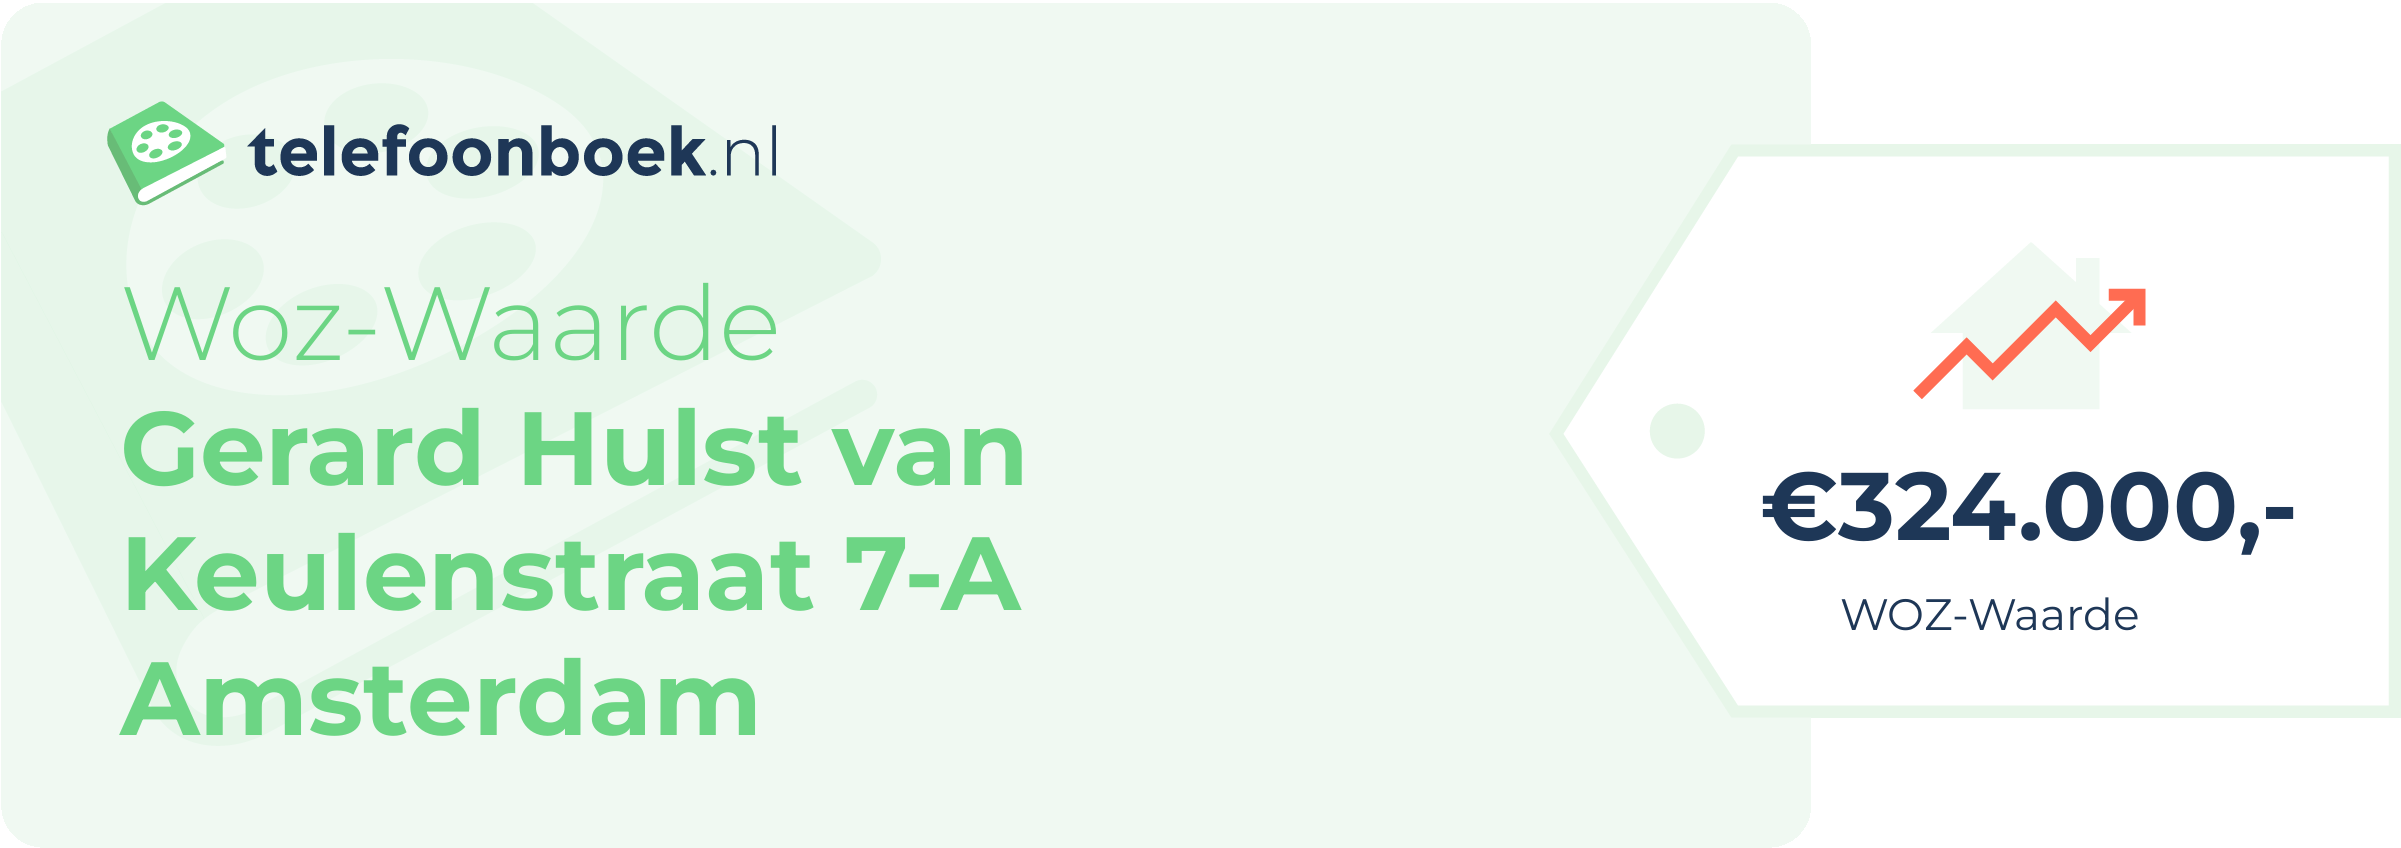 WOZ-waarde Gerard Hulst Van Keulenstraat 7-A Amsterdam